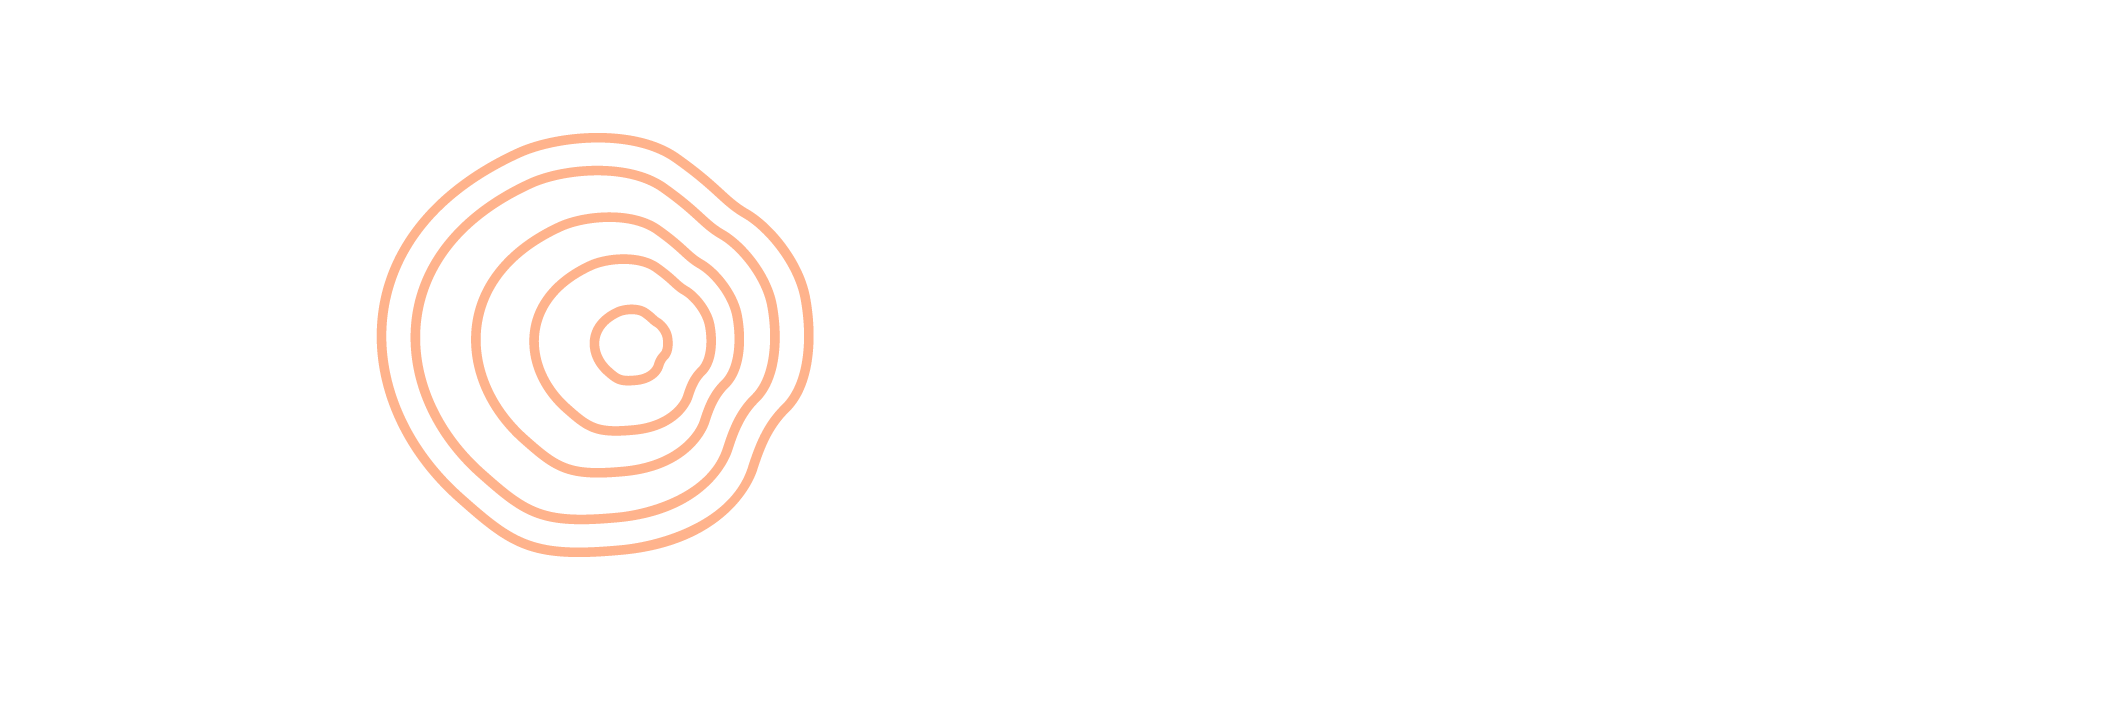 Byske Begravningsbyrå logotyp